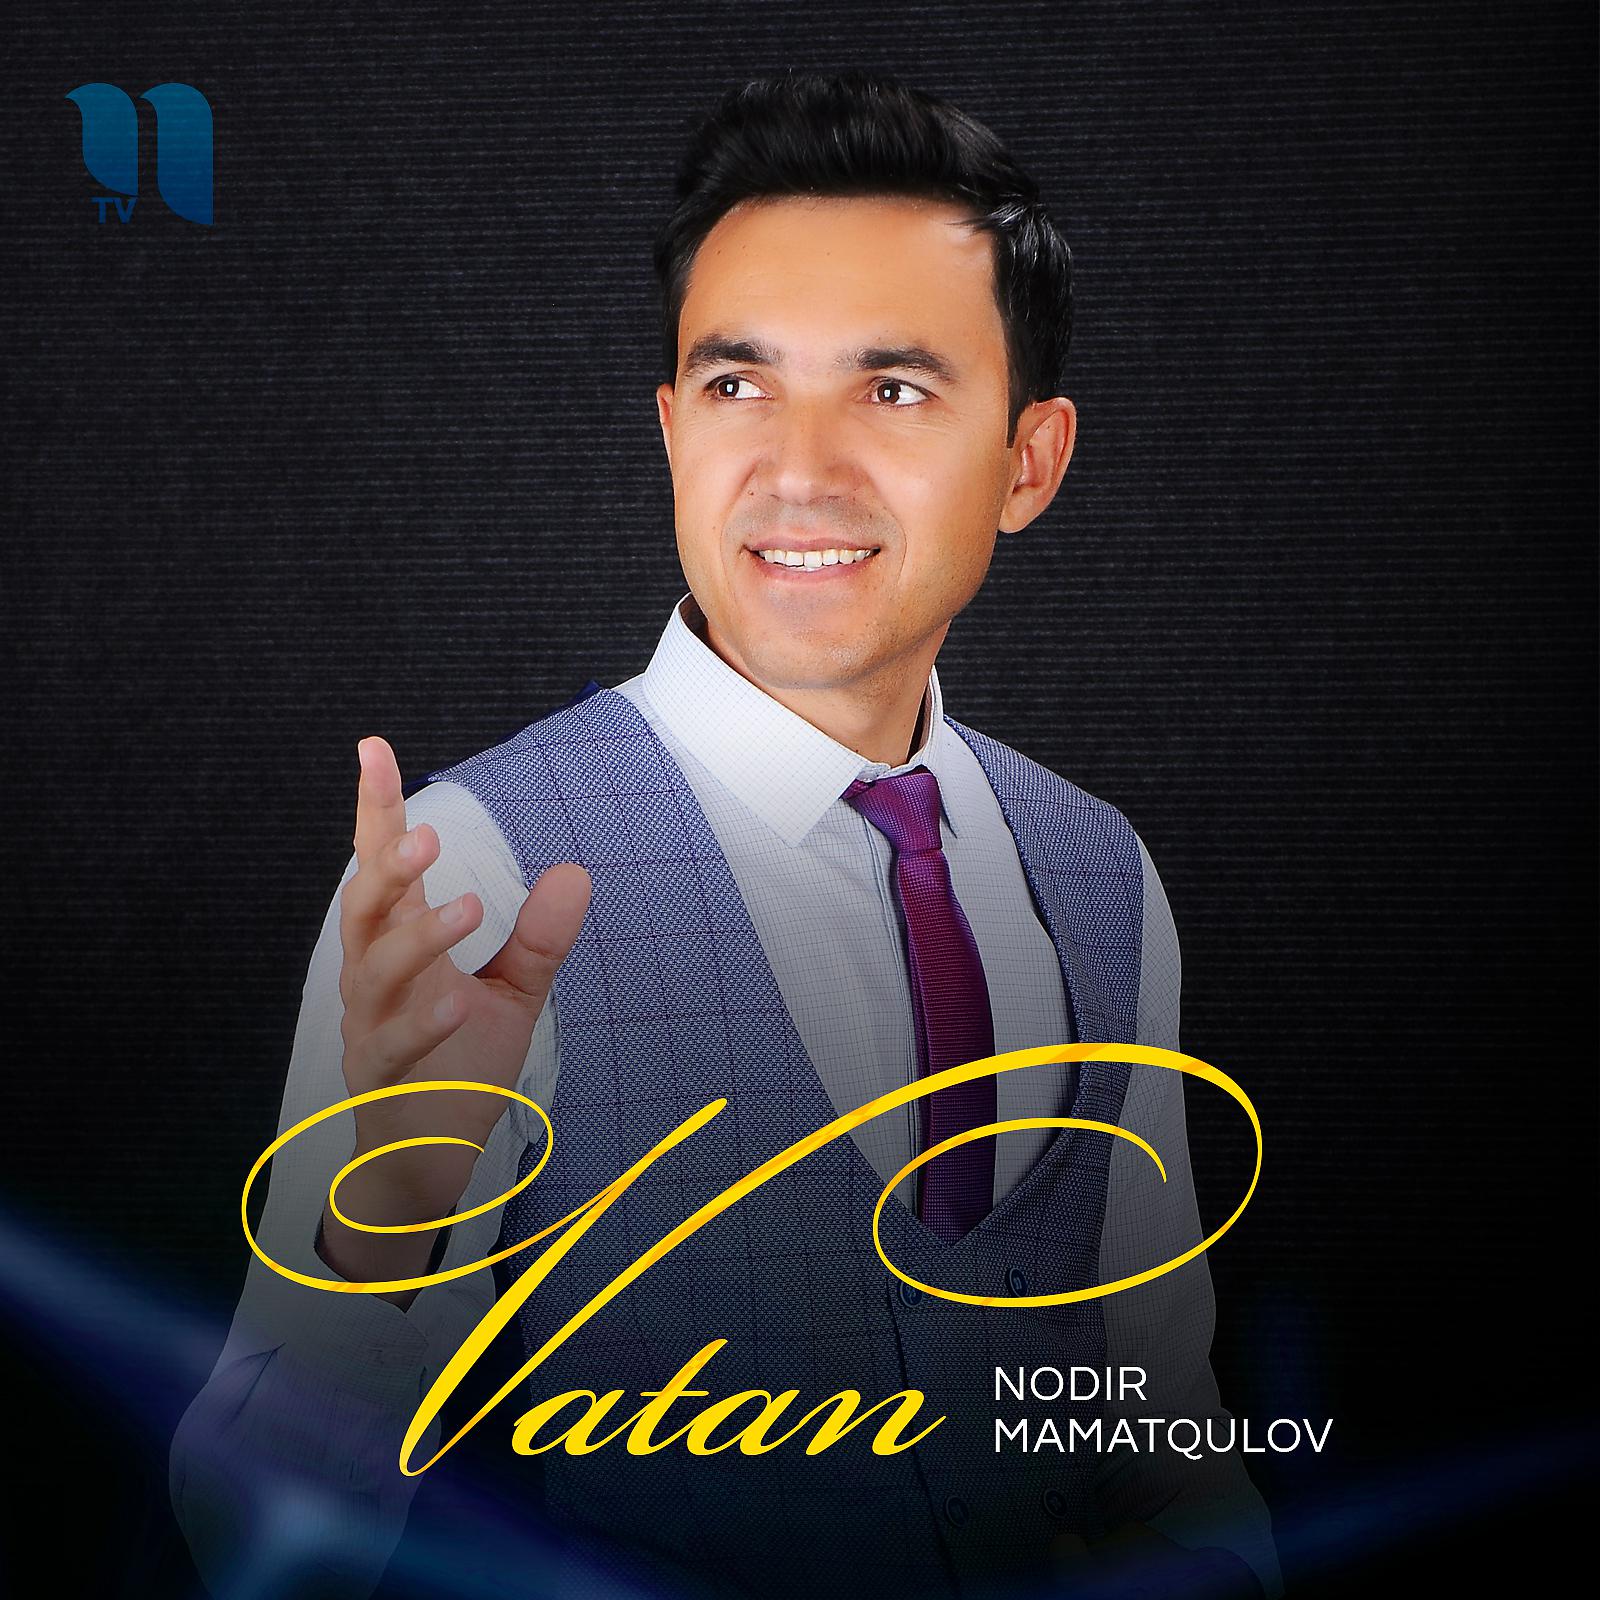 Постер альбома Vatan